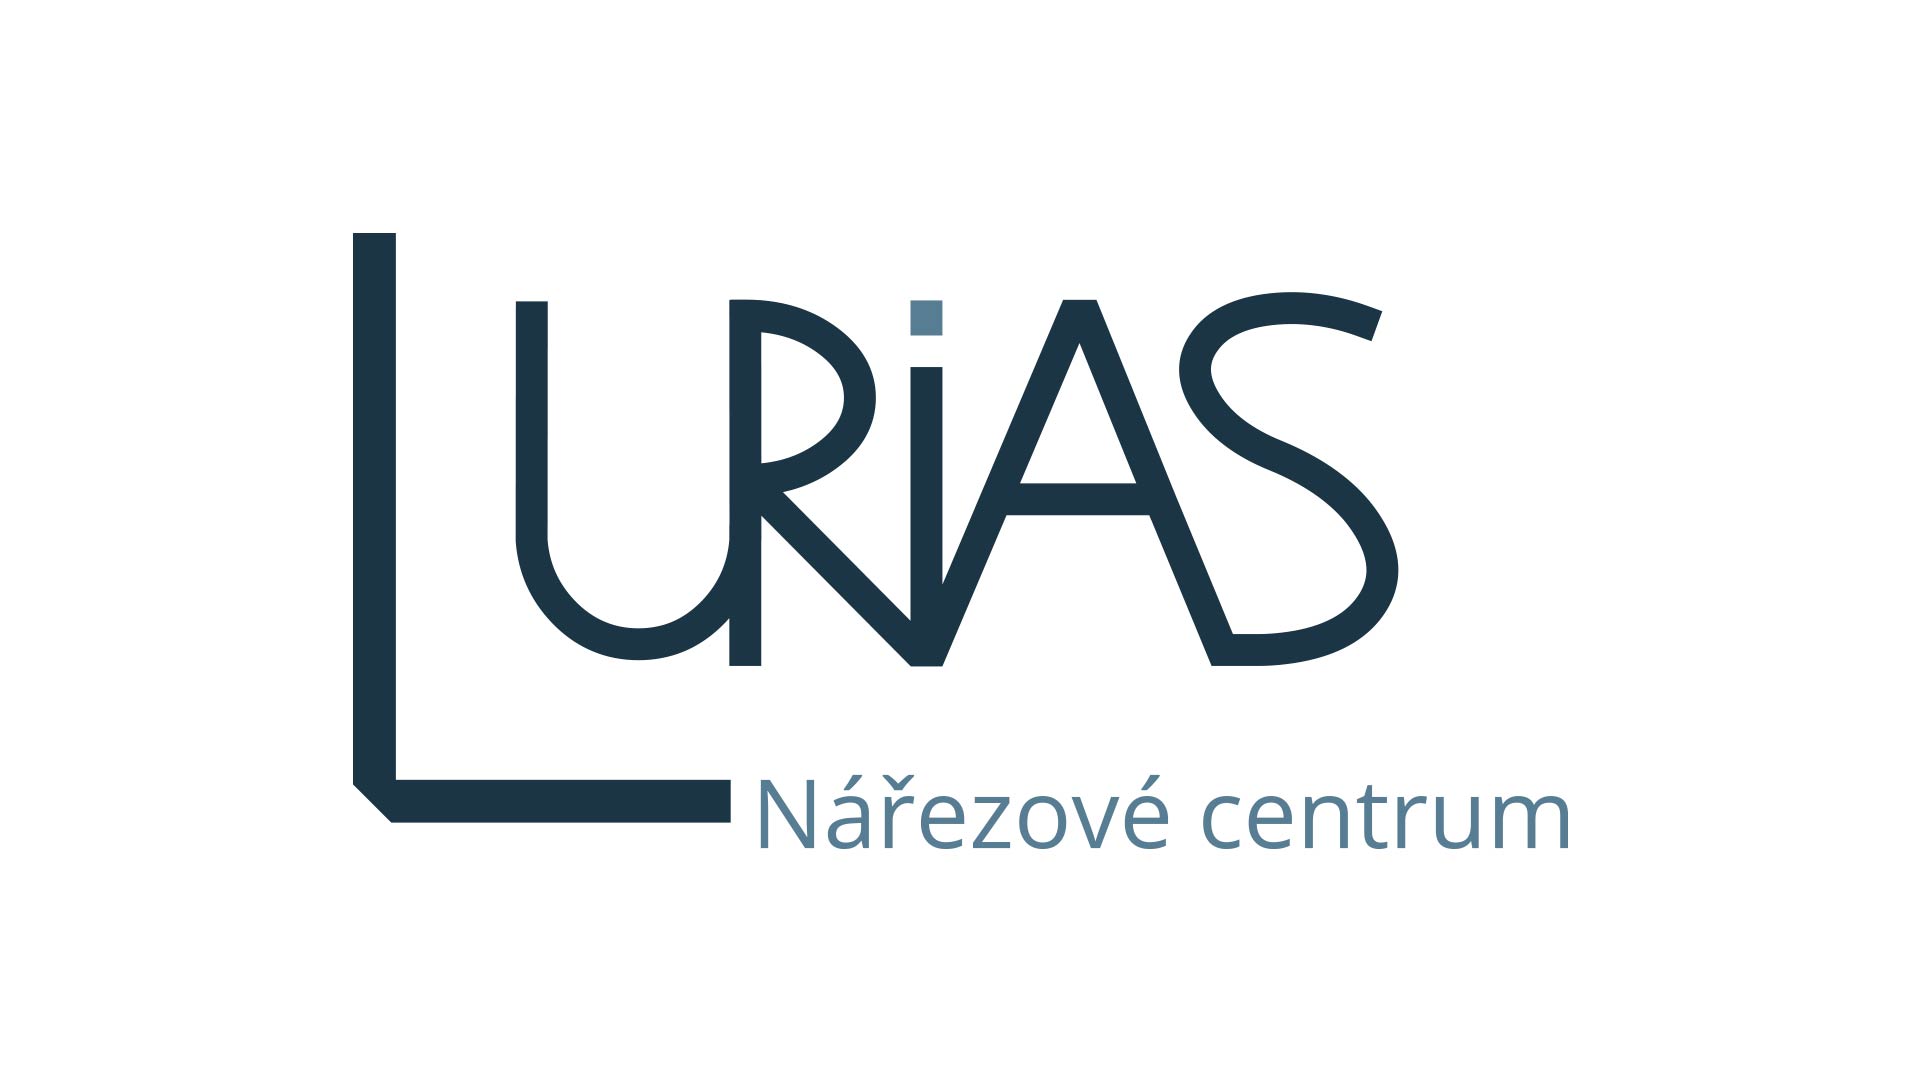 Tvorba loga - logo Nářezové centrum Lurias